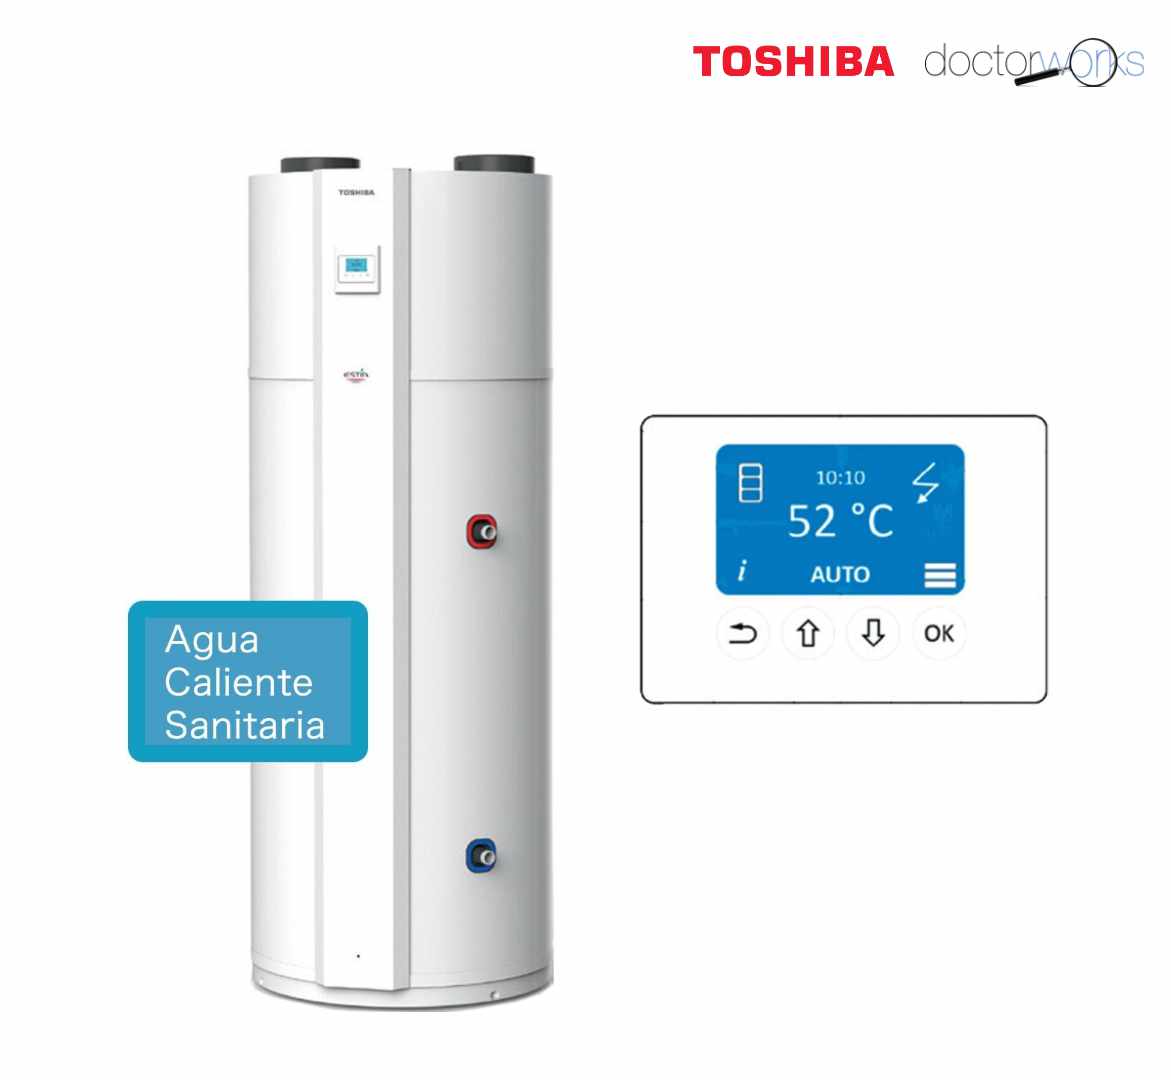 Toshiba Tanque termodinámico Agua Caliente Sanitaria (ACS) 190 l - 5 personas